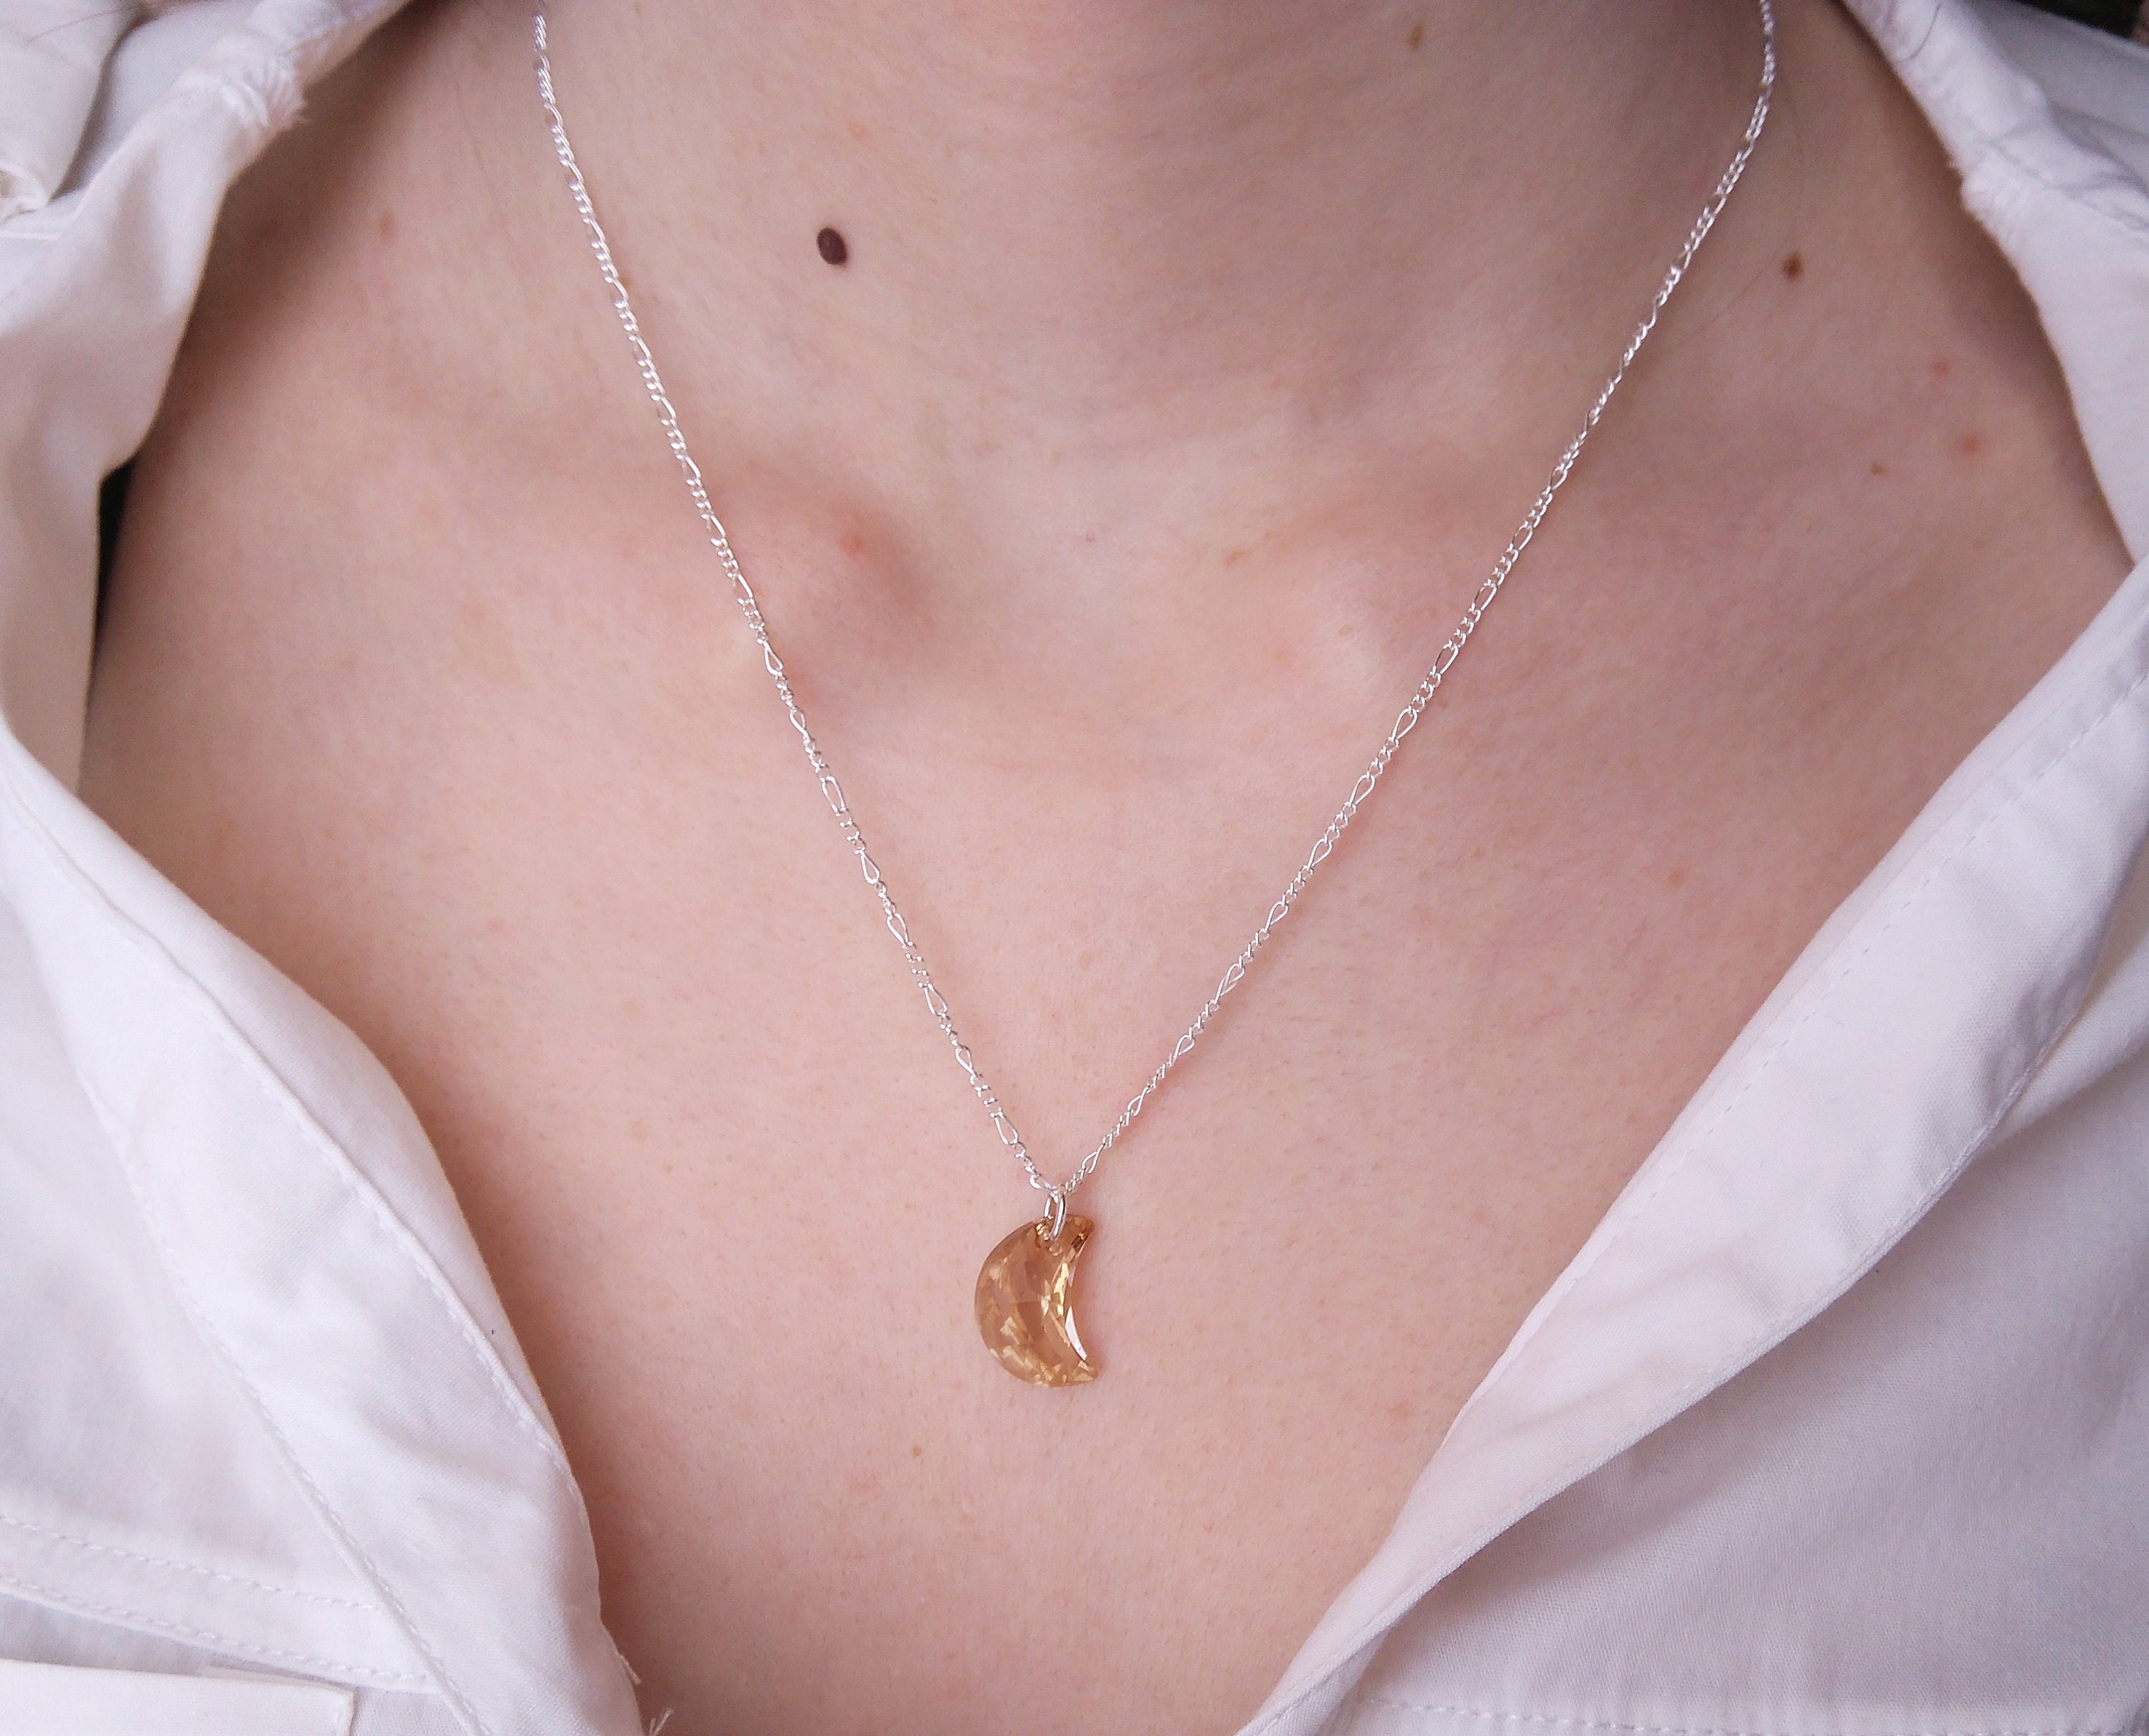 Swarovski Symbolic necklace, Moon, infinity, hand, evil eye and horseshoe,  Blue, Rose gold-tone plated